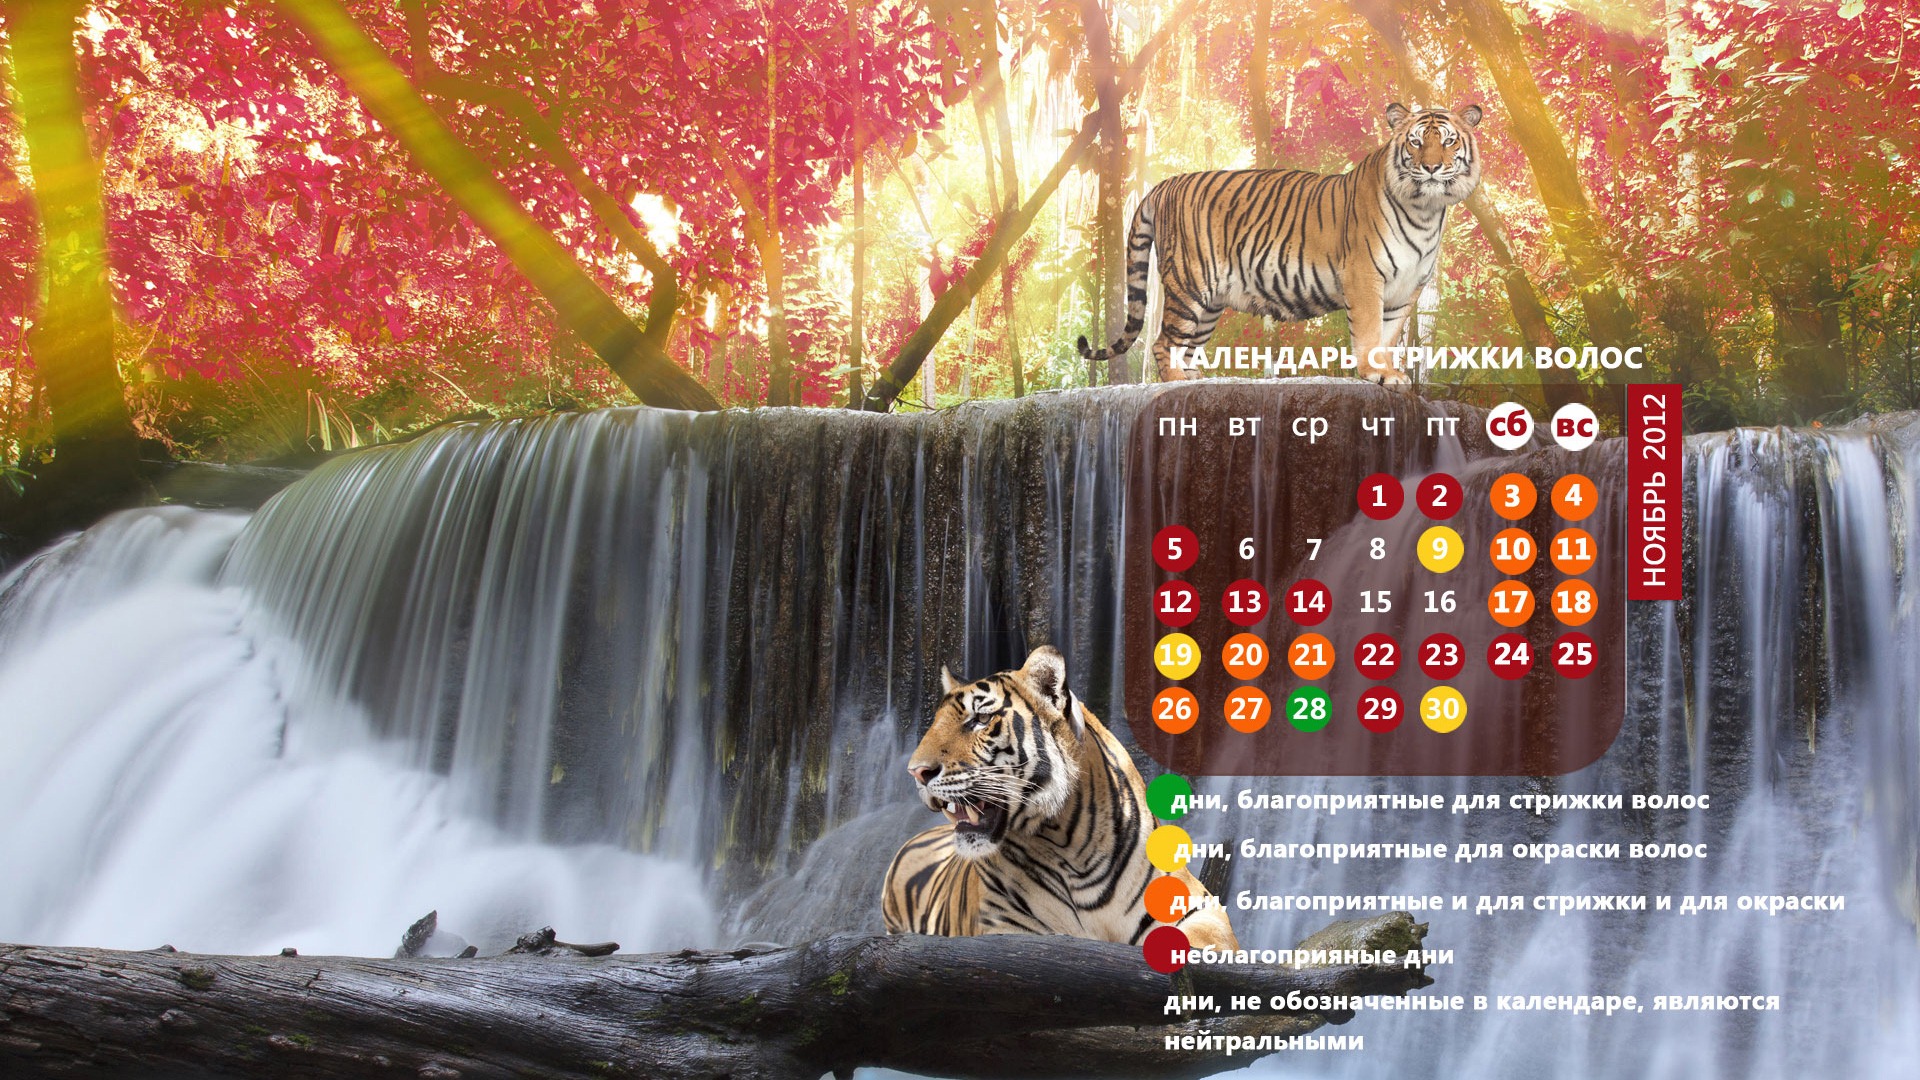 Novembre 2012 Calendar Wallpaper (2) #18 - 1920x1080